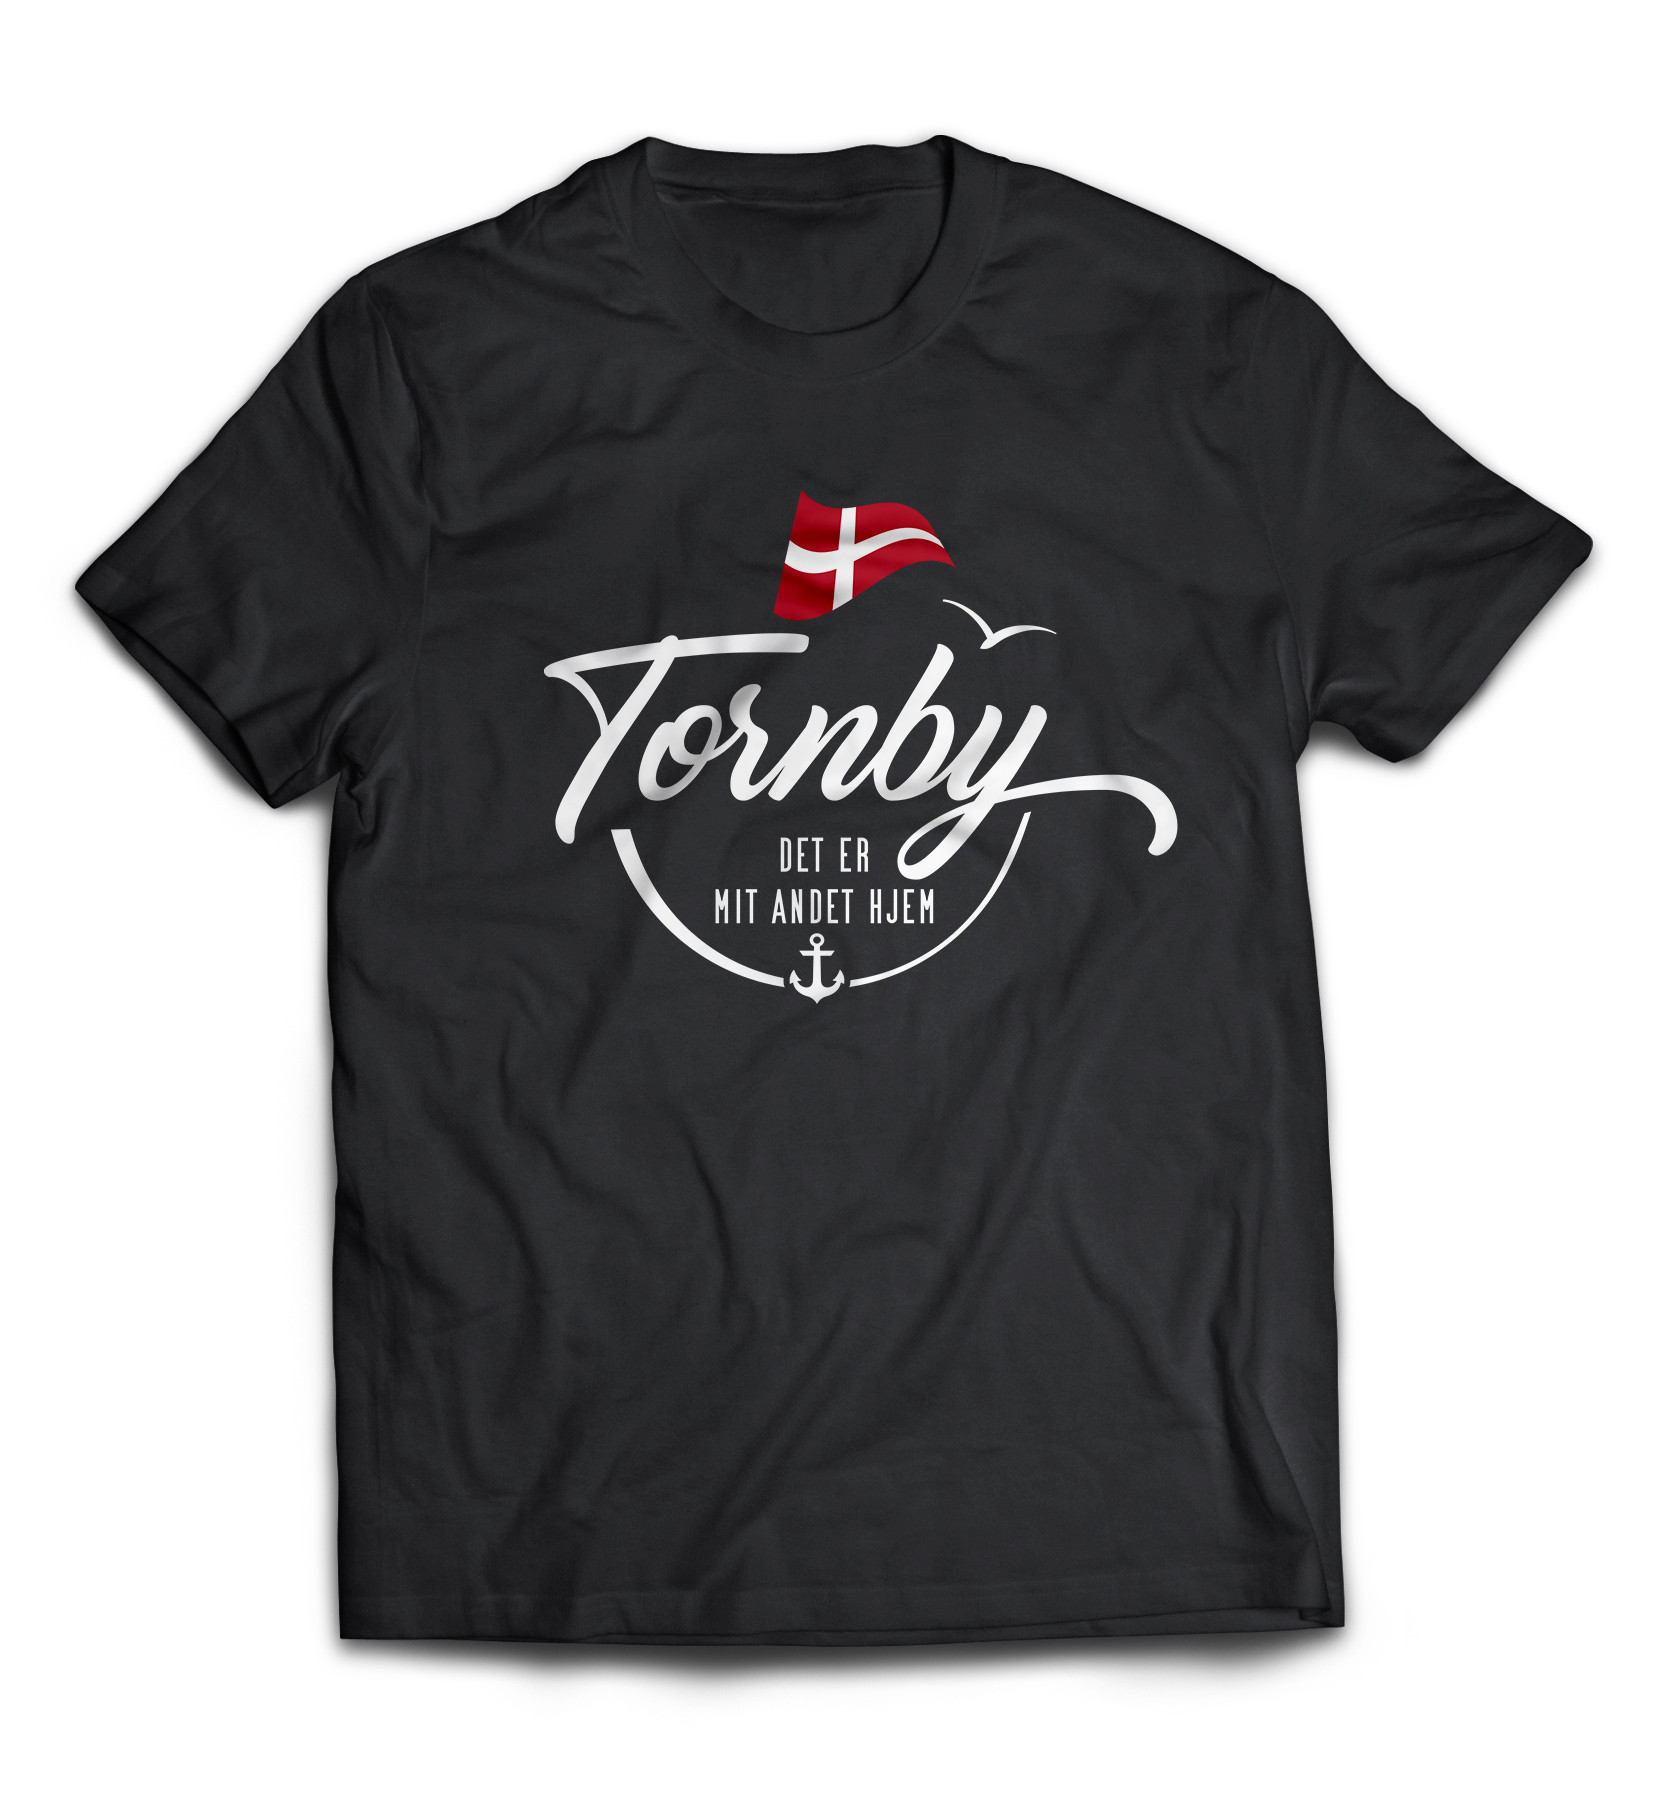 Dänemark - Meine zweite Heimat - T-Shirt "Tornby"